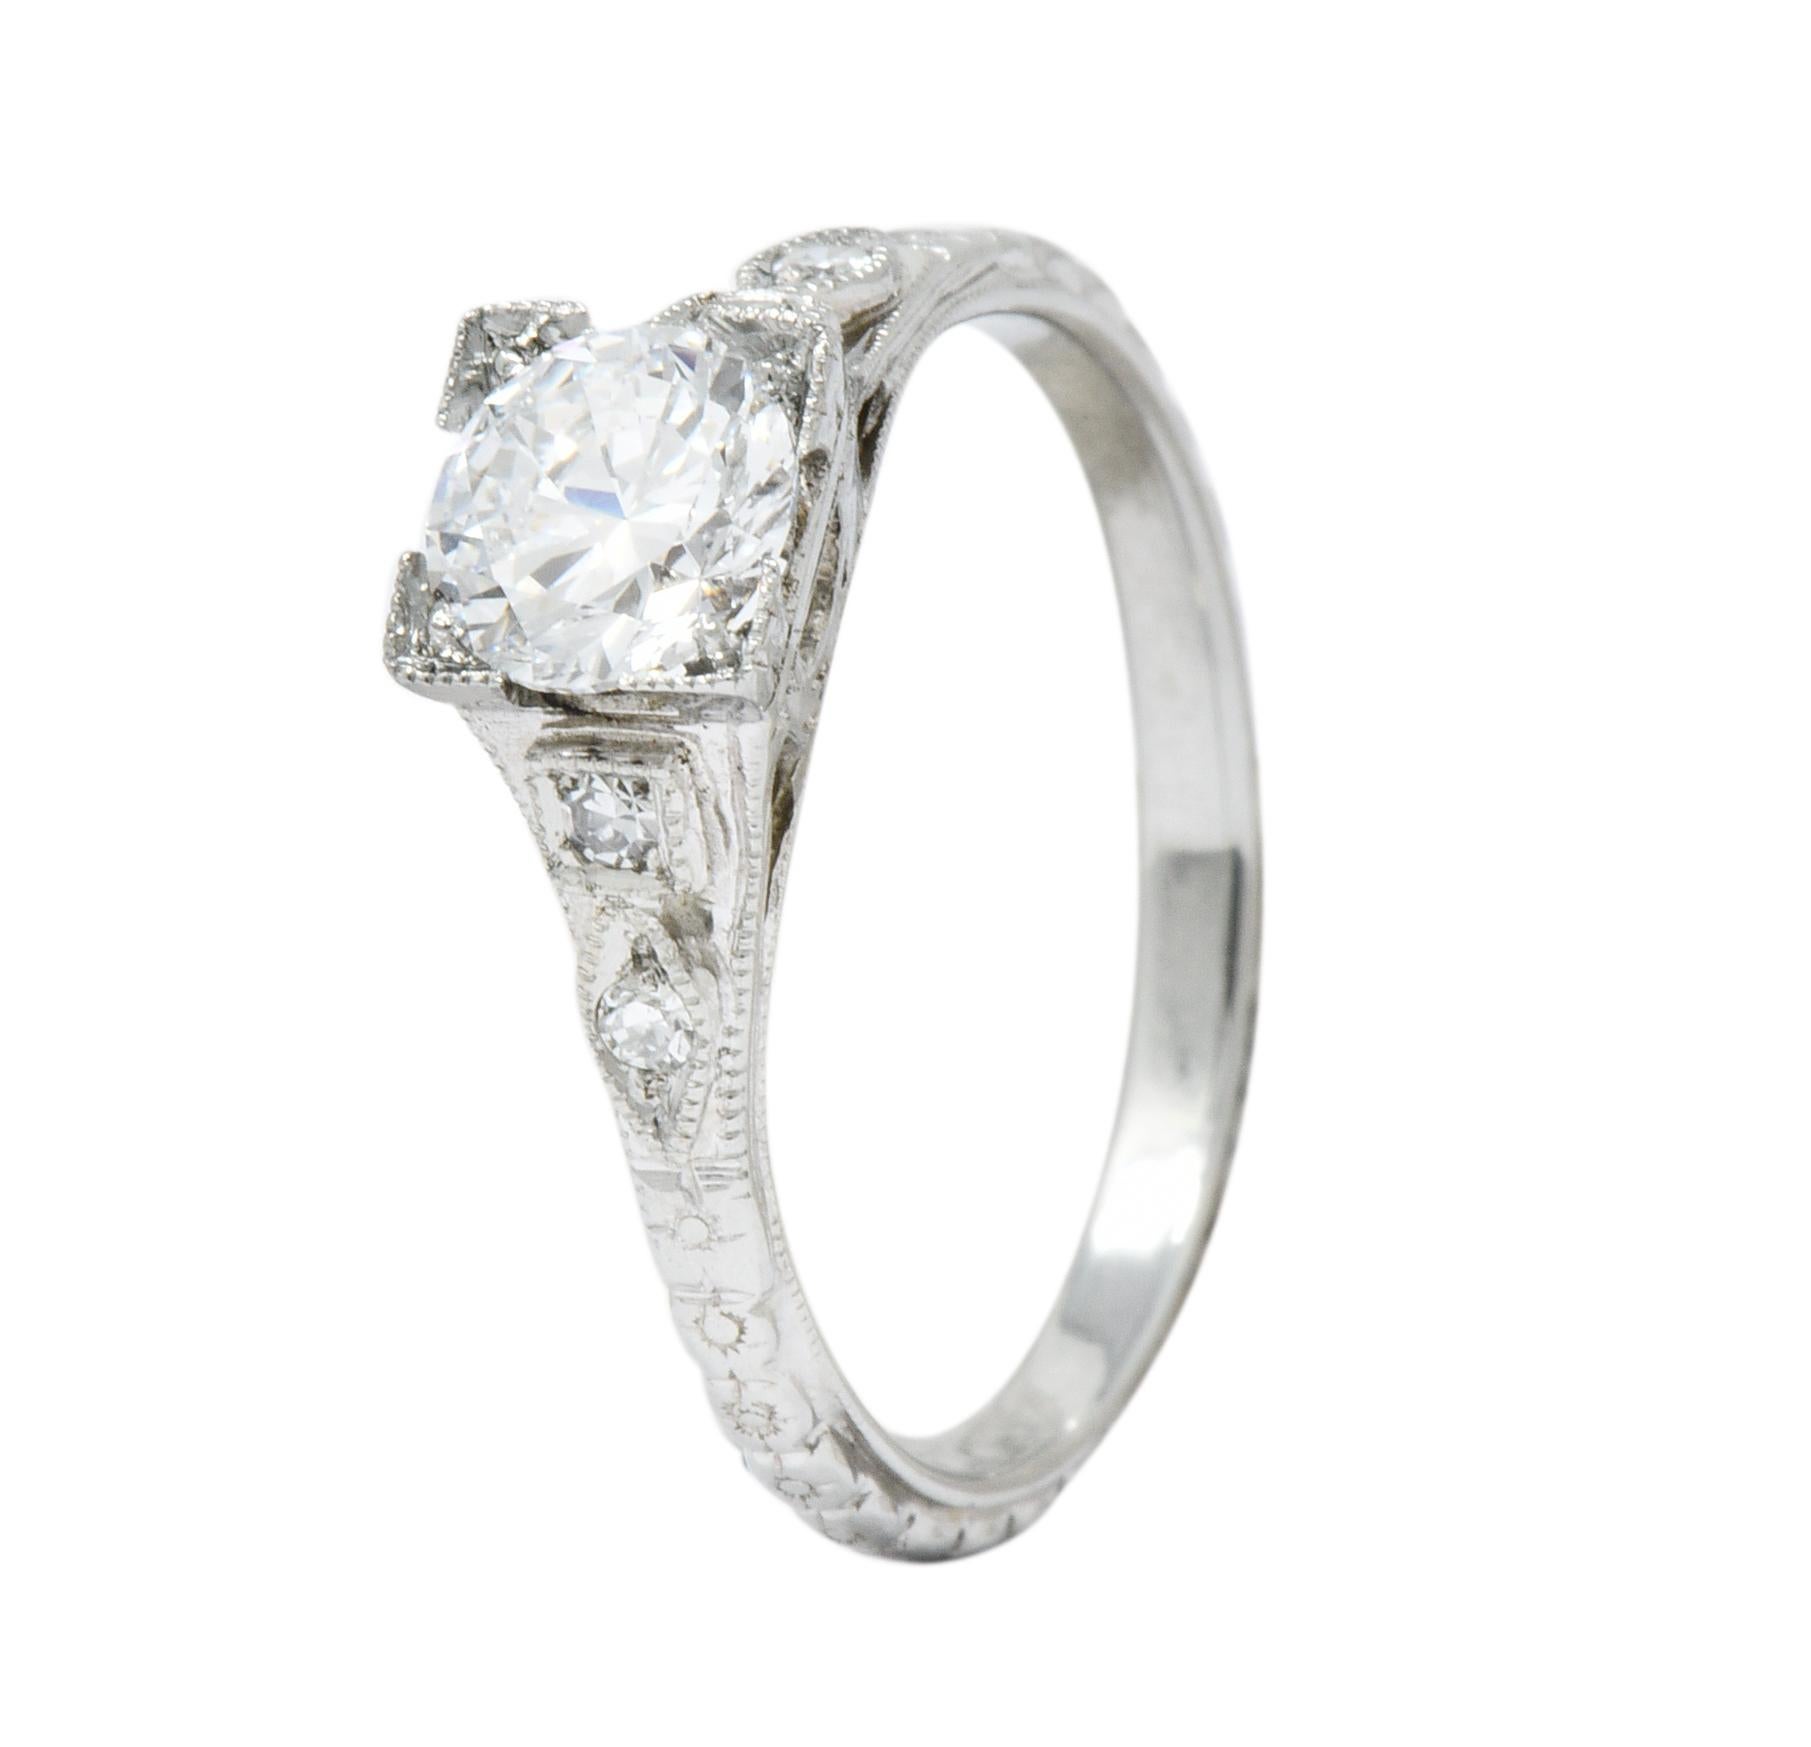 White Rose Mfg. Co. Art Deco Diamond 18 Karat White Gold Engagement Ring 4